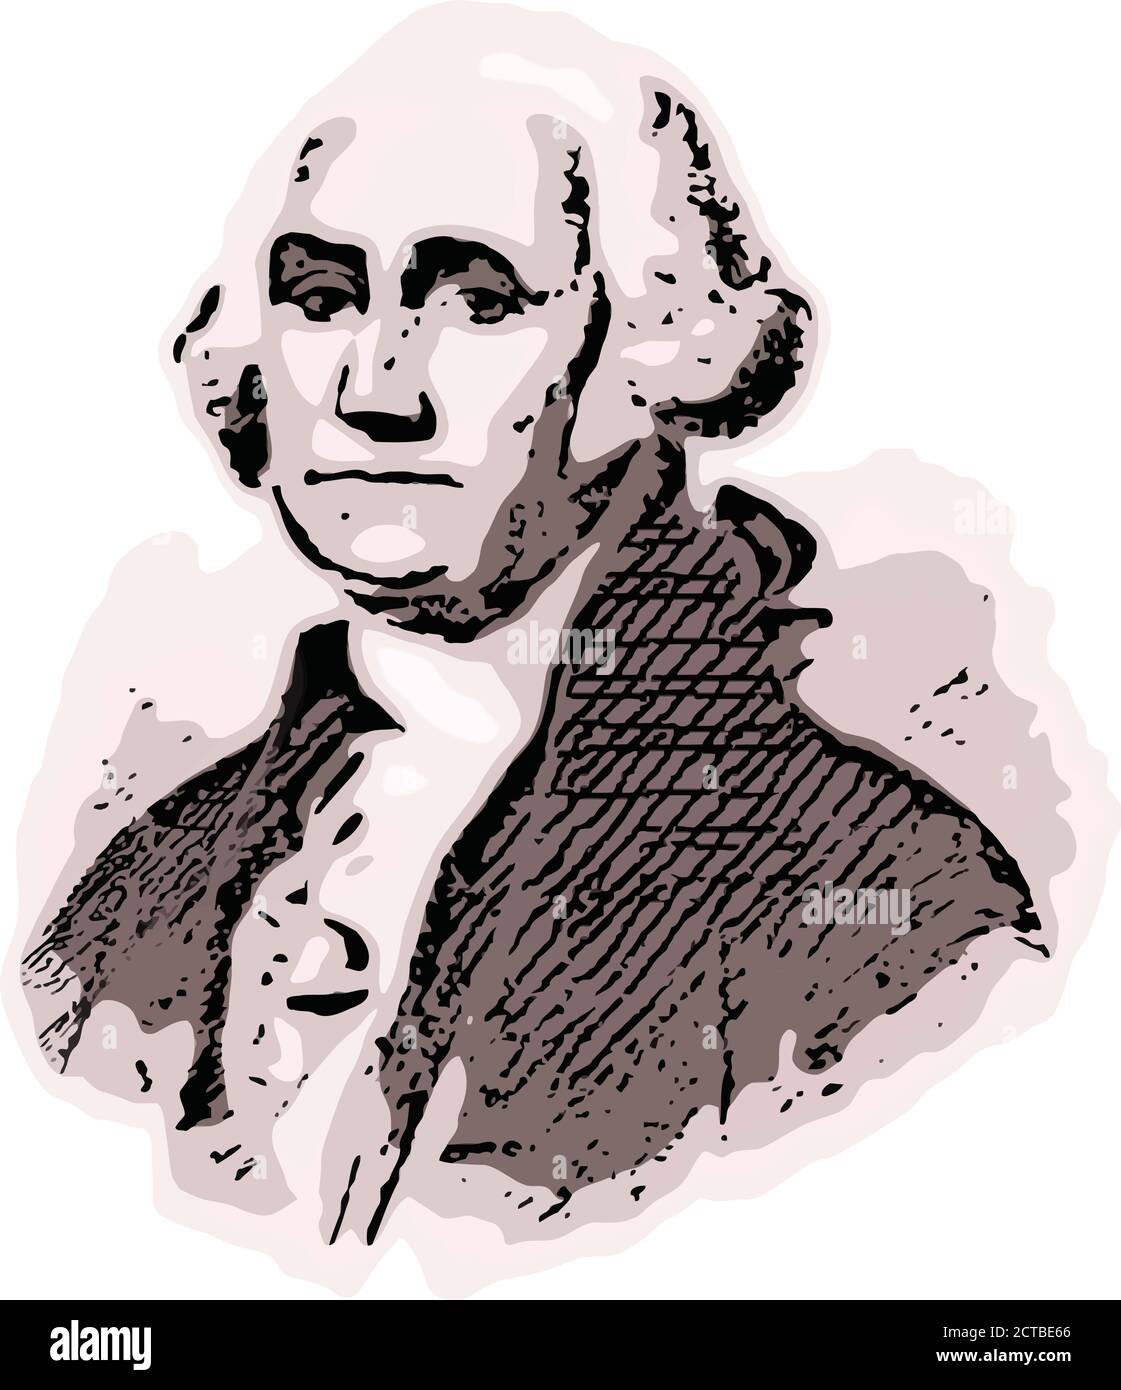 Retrato vectorial del presidente George Washington. George Washington (1732 – 1799) fue un líder político estadounidense, general militar, estadista y fou Ilustración del Vector